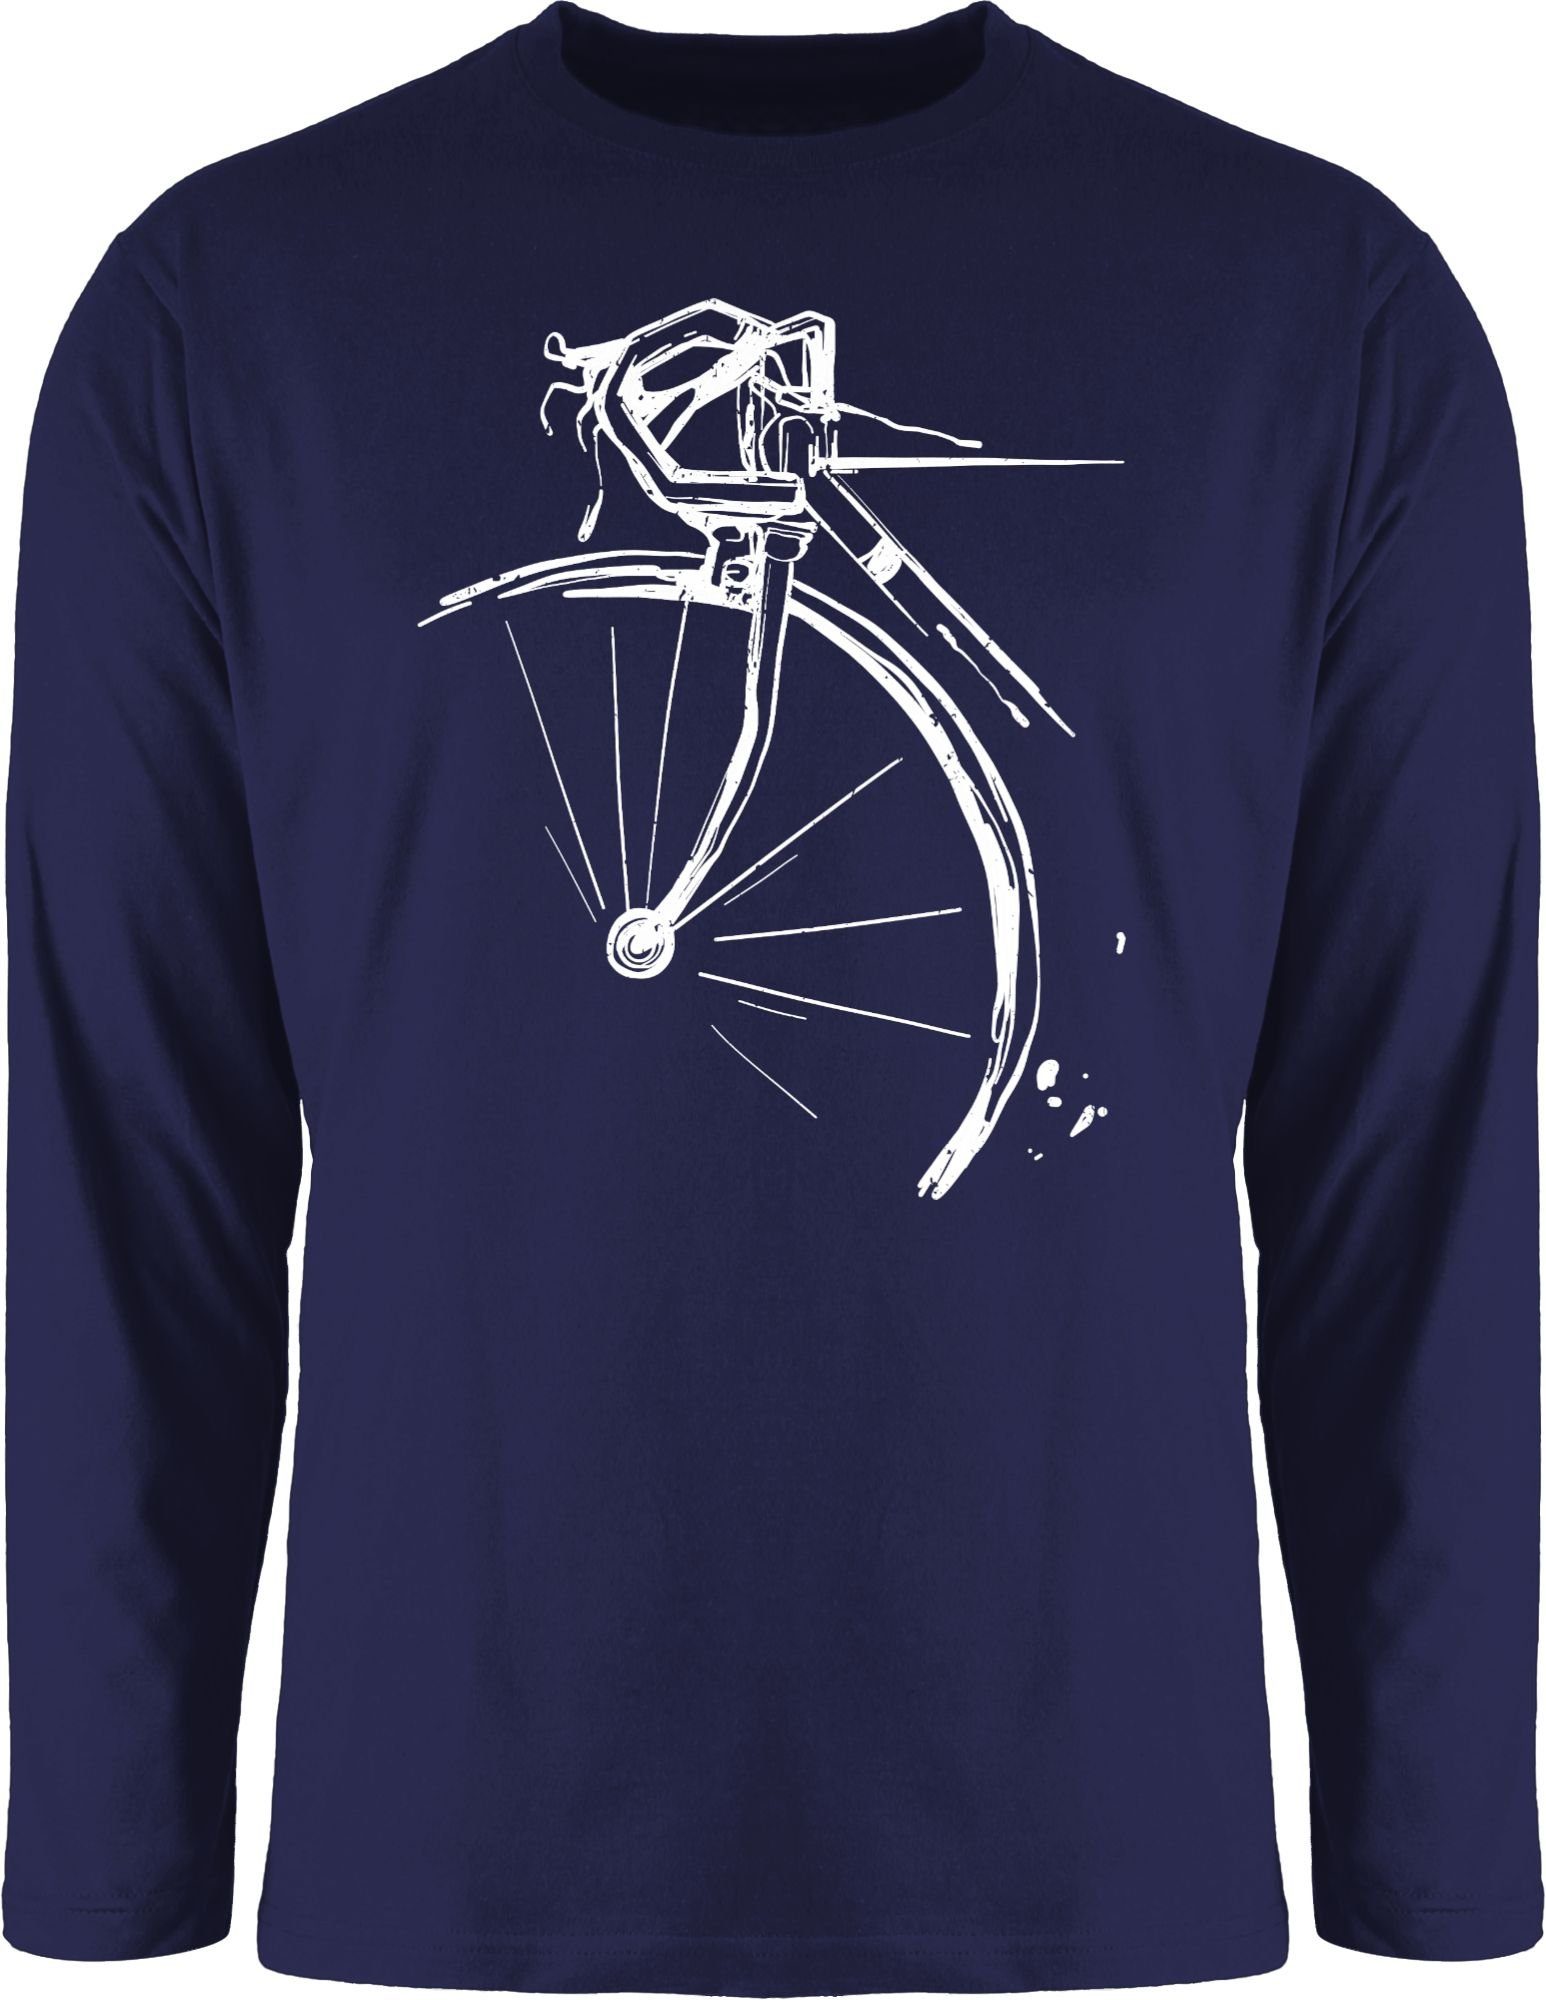 Shirtracer Rundhalsshirt Fahrrad Rennrad Fahrrad Bekleidung Radsport 1 Navy Blau